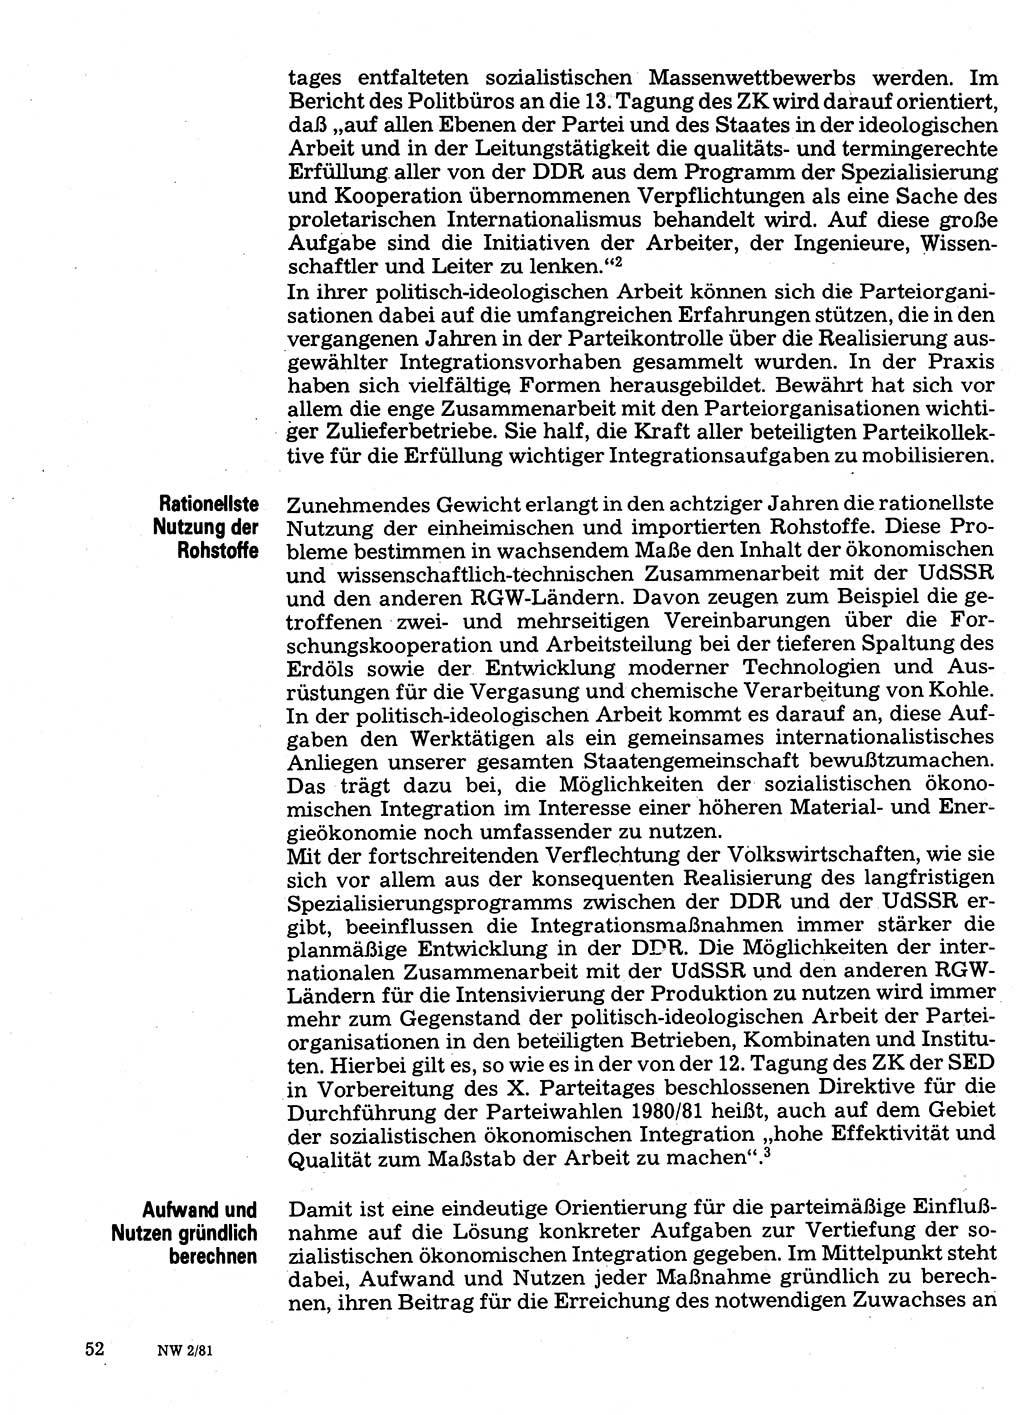 Neuer Weg (NW), Organ des Zentralkomitees (ZK) der SED (Sozialistische Einheitspartei Deutschlands) für Fragen des Parteilebens, 36. Jahrgang [Deutsche Demokratische Republik (DDR)] 1981, Seite 52 (NW ZK SED DDR 1981, S. 52)